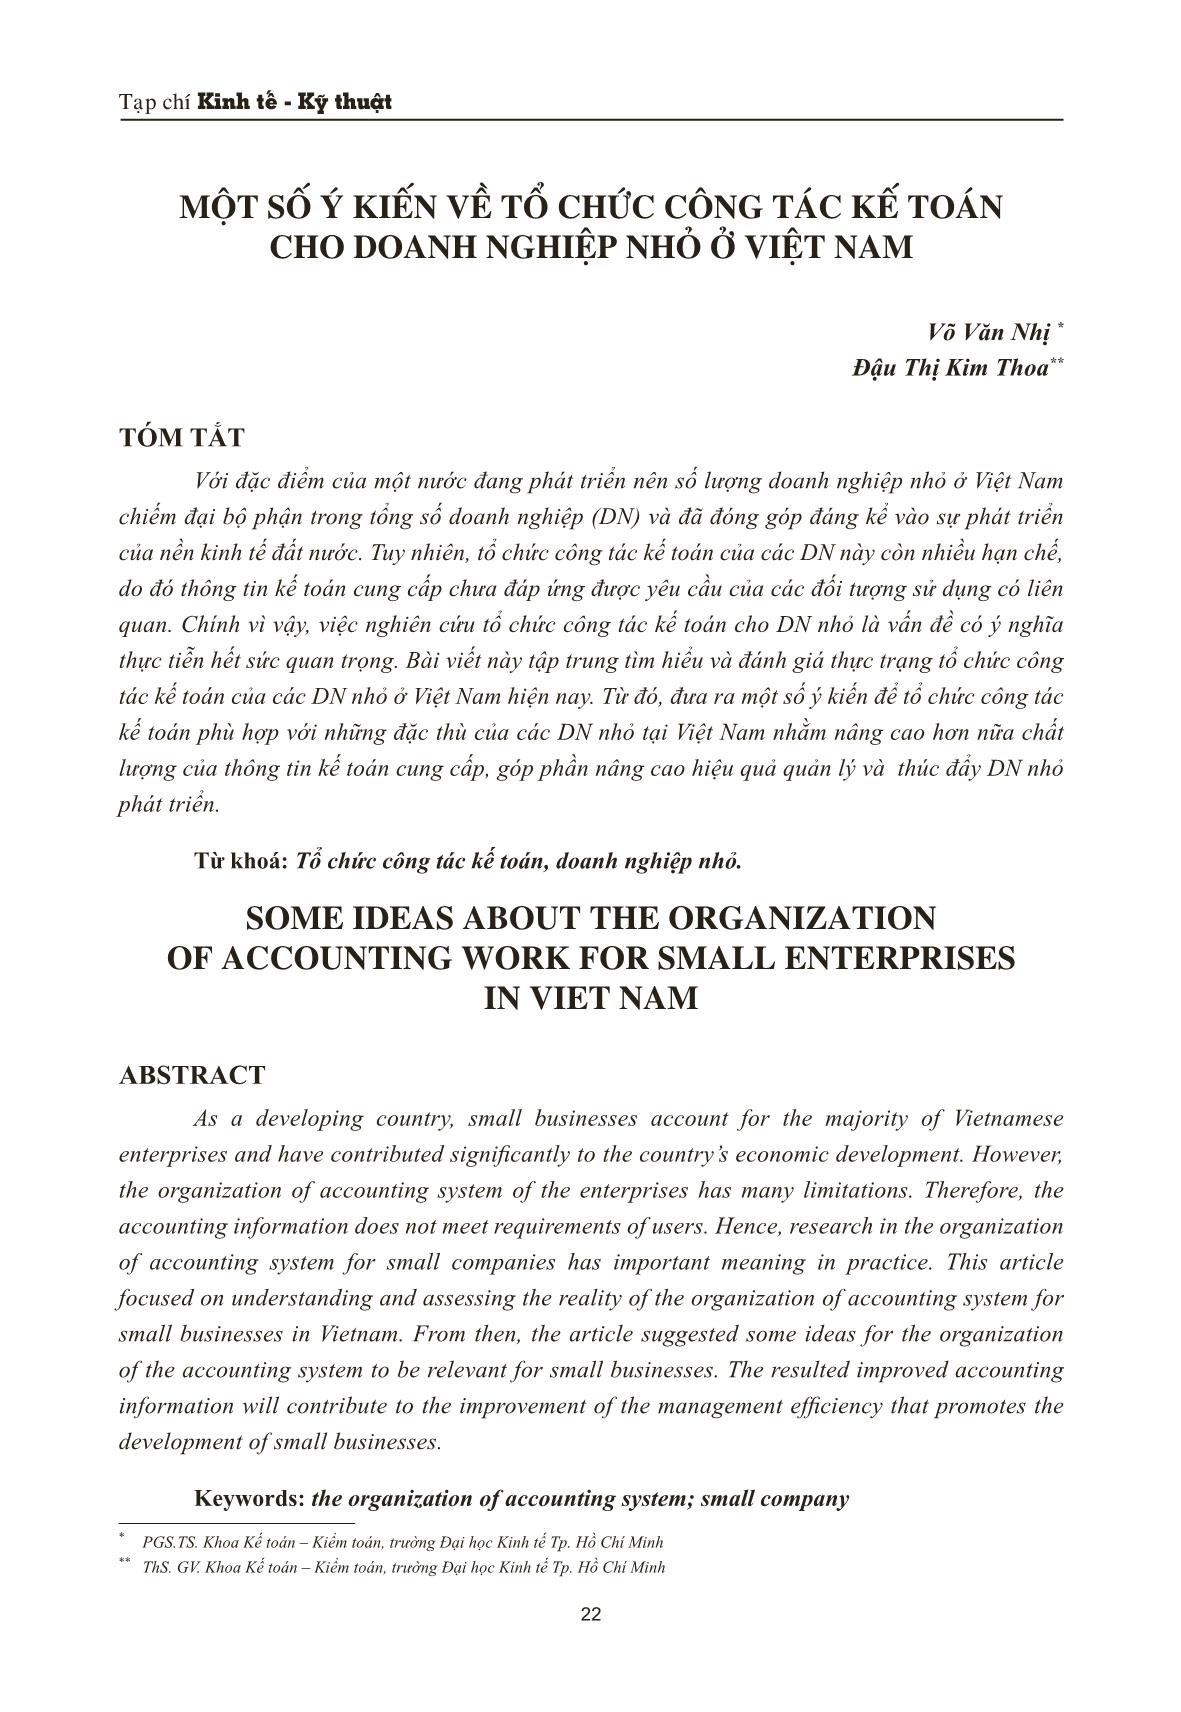 Một số ý kiến về tổ chức công tác kế toán cho doanh nghiệp nhỏ ở Việt Nam trang 1